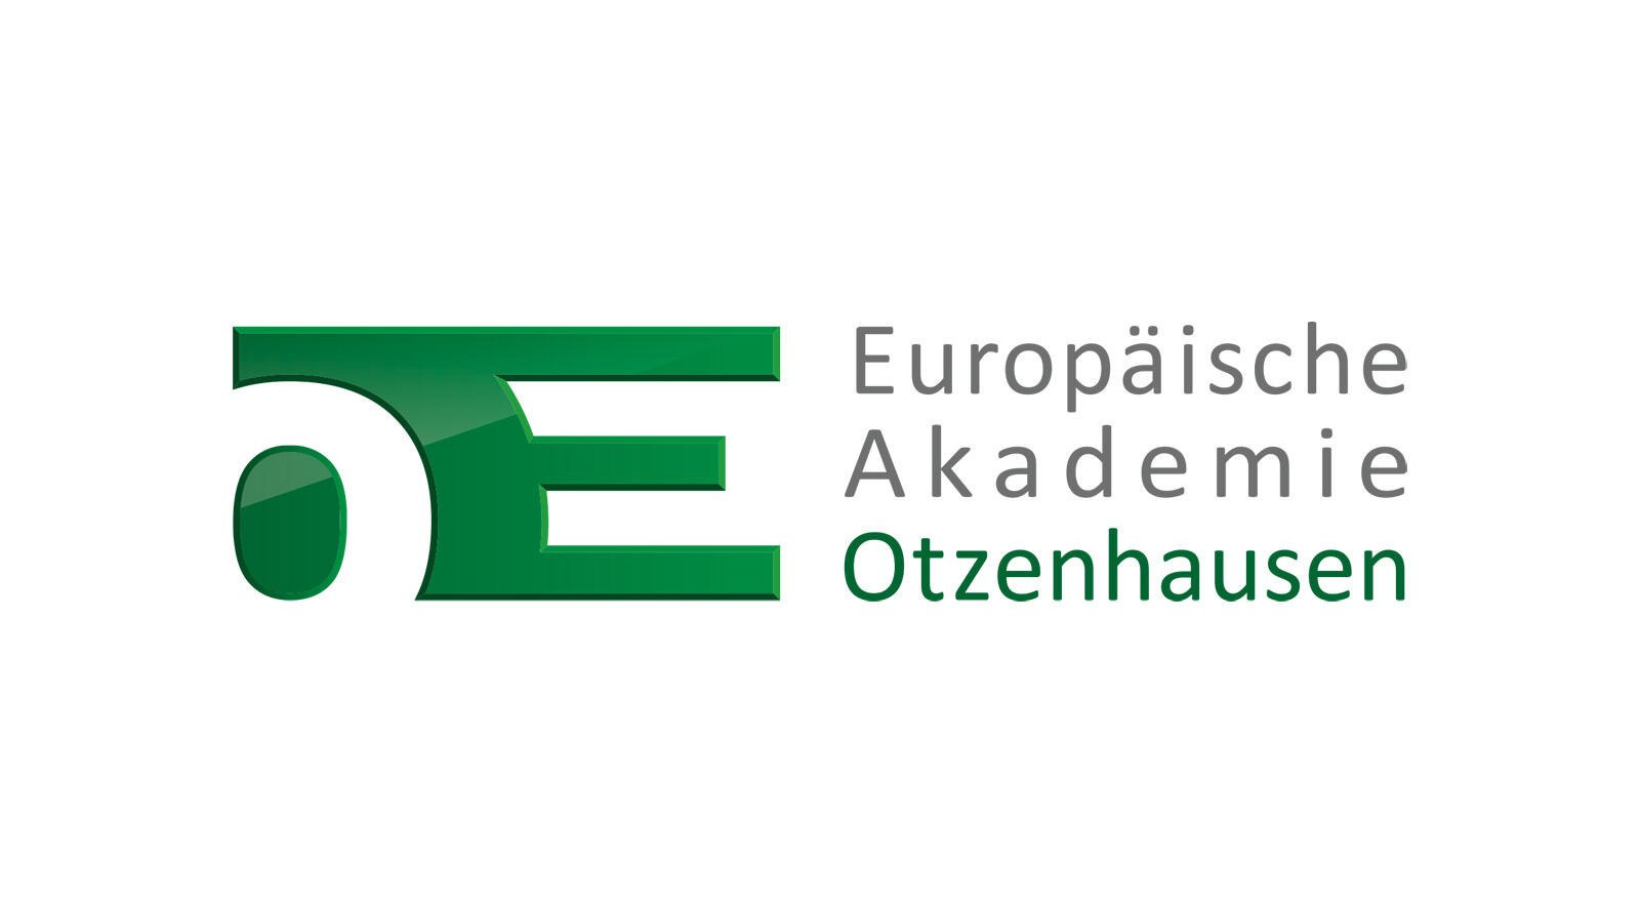 Europäische Akademie